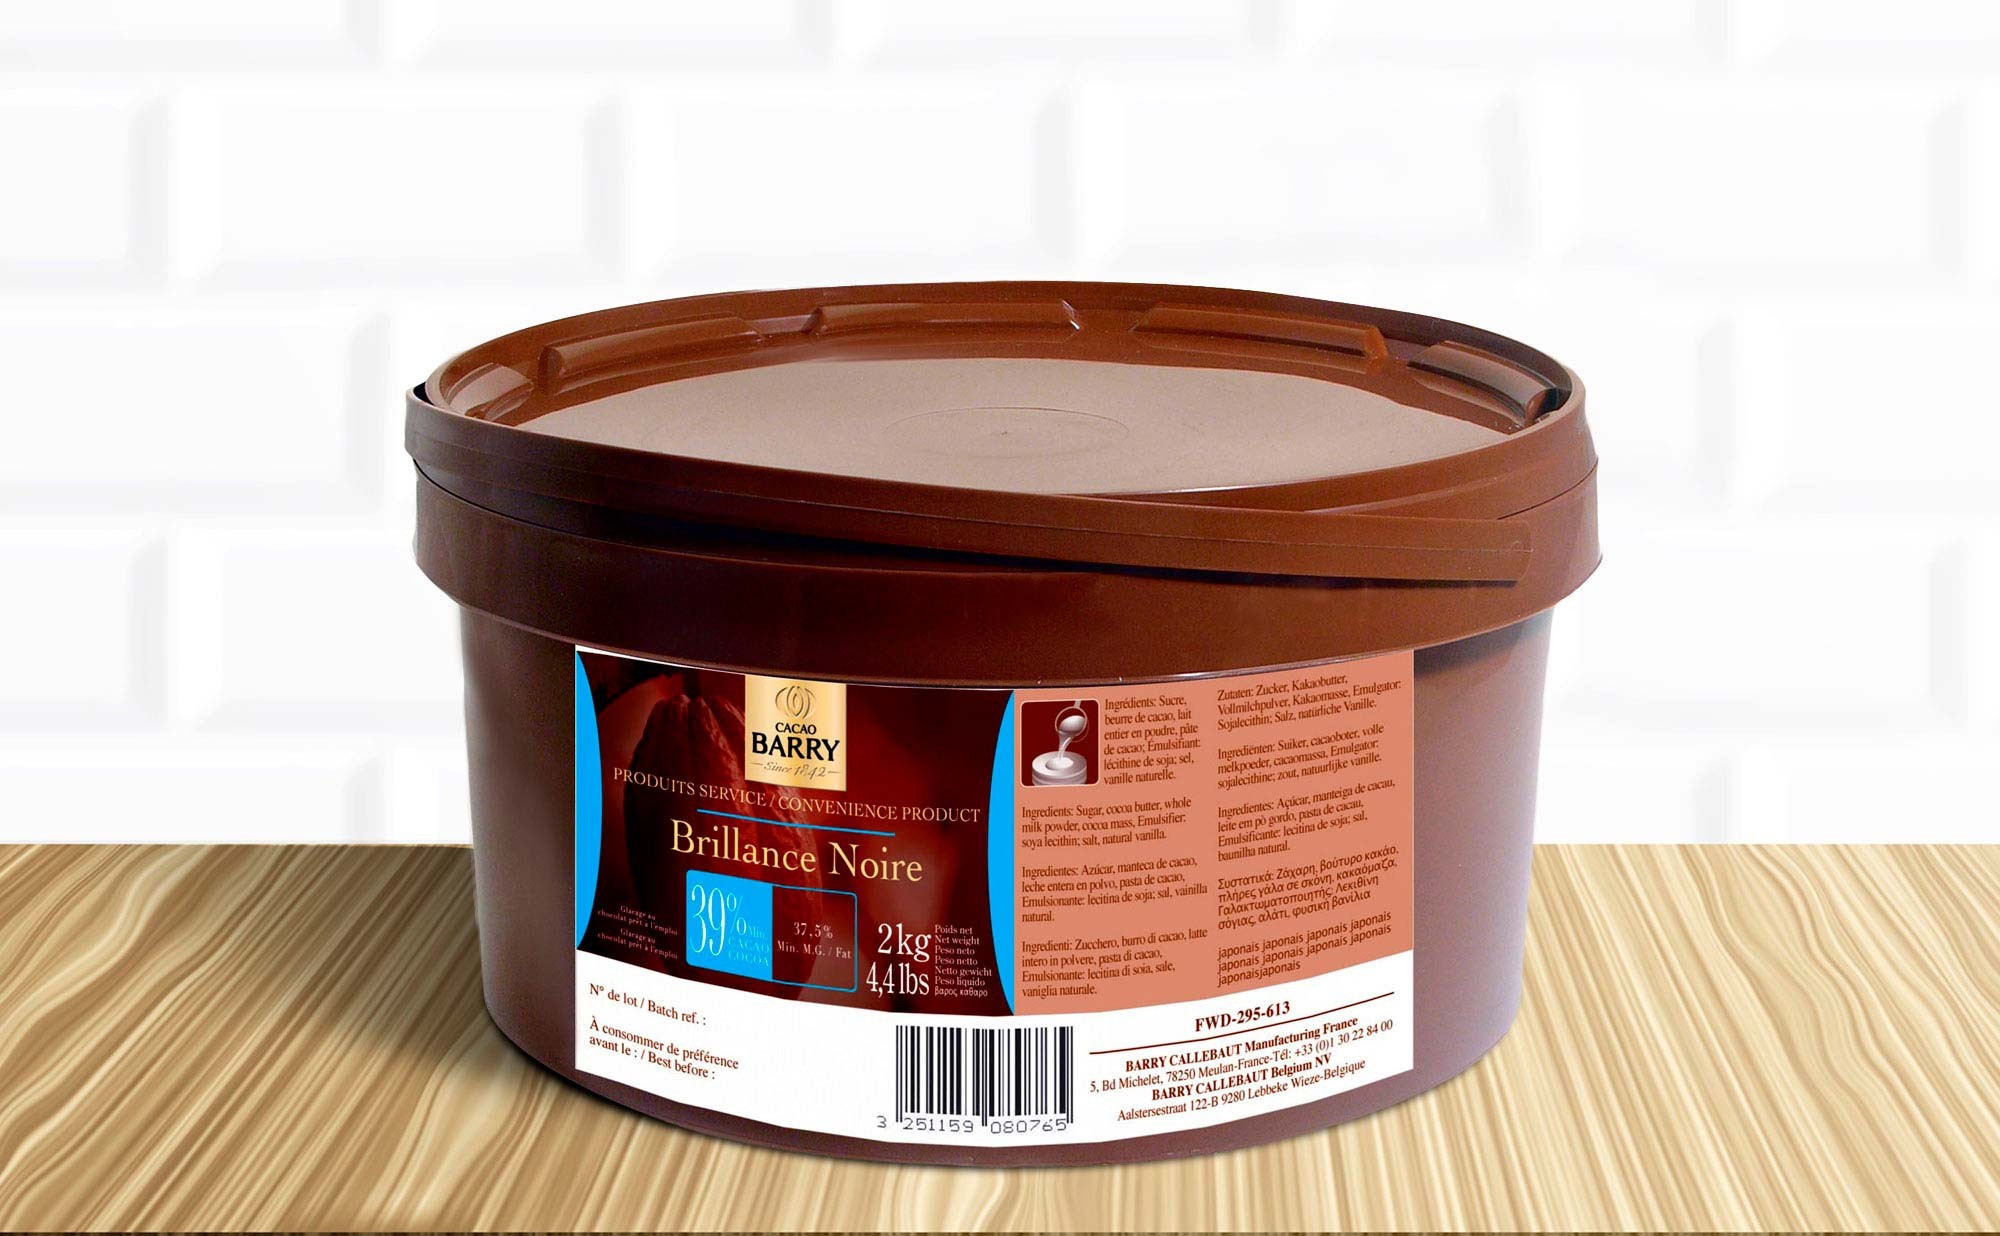 Cacao en poudre seau 2 kg